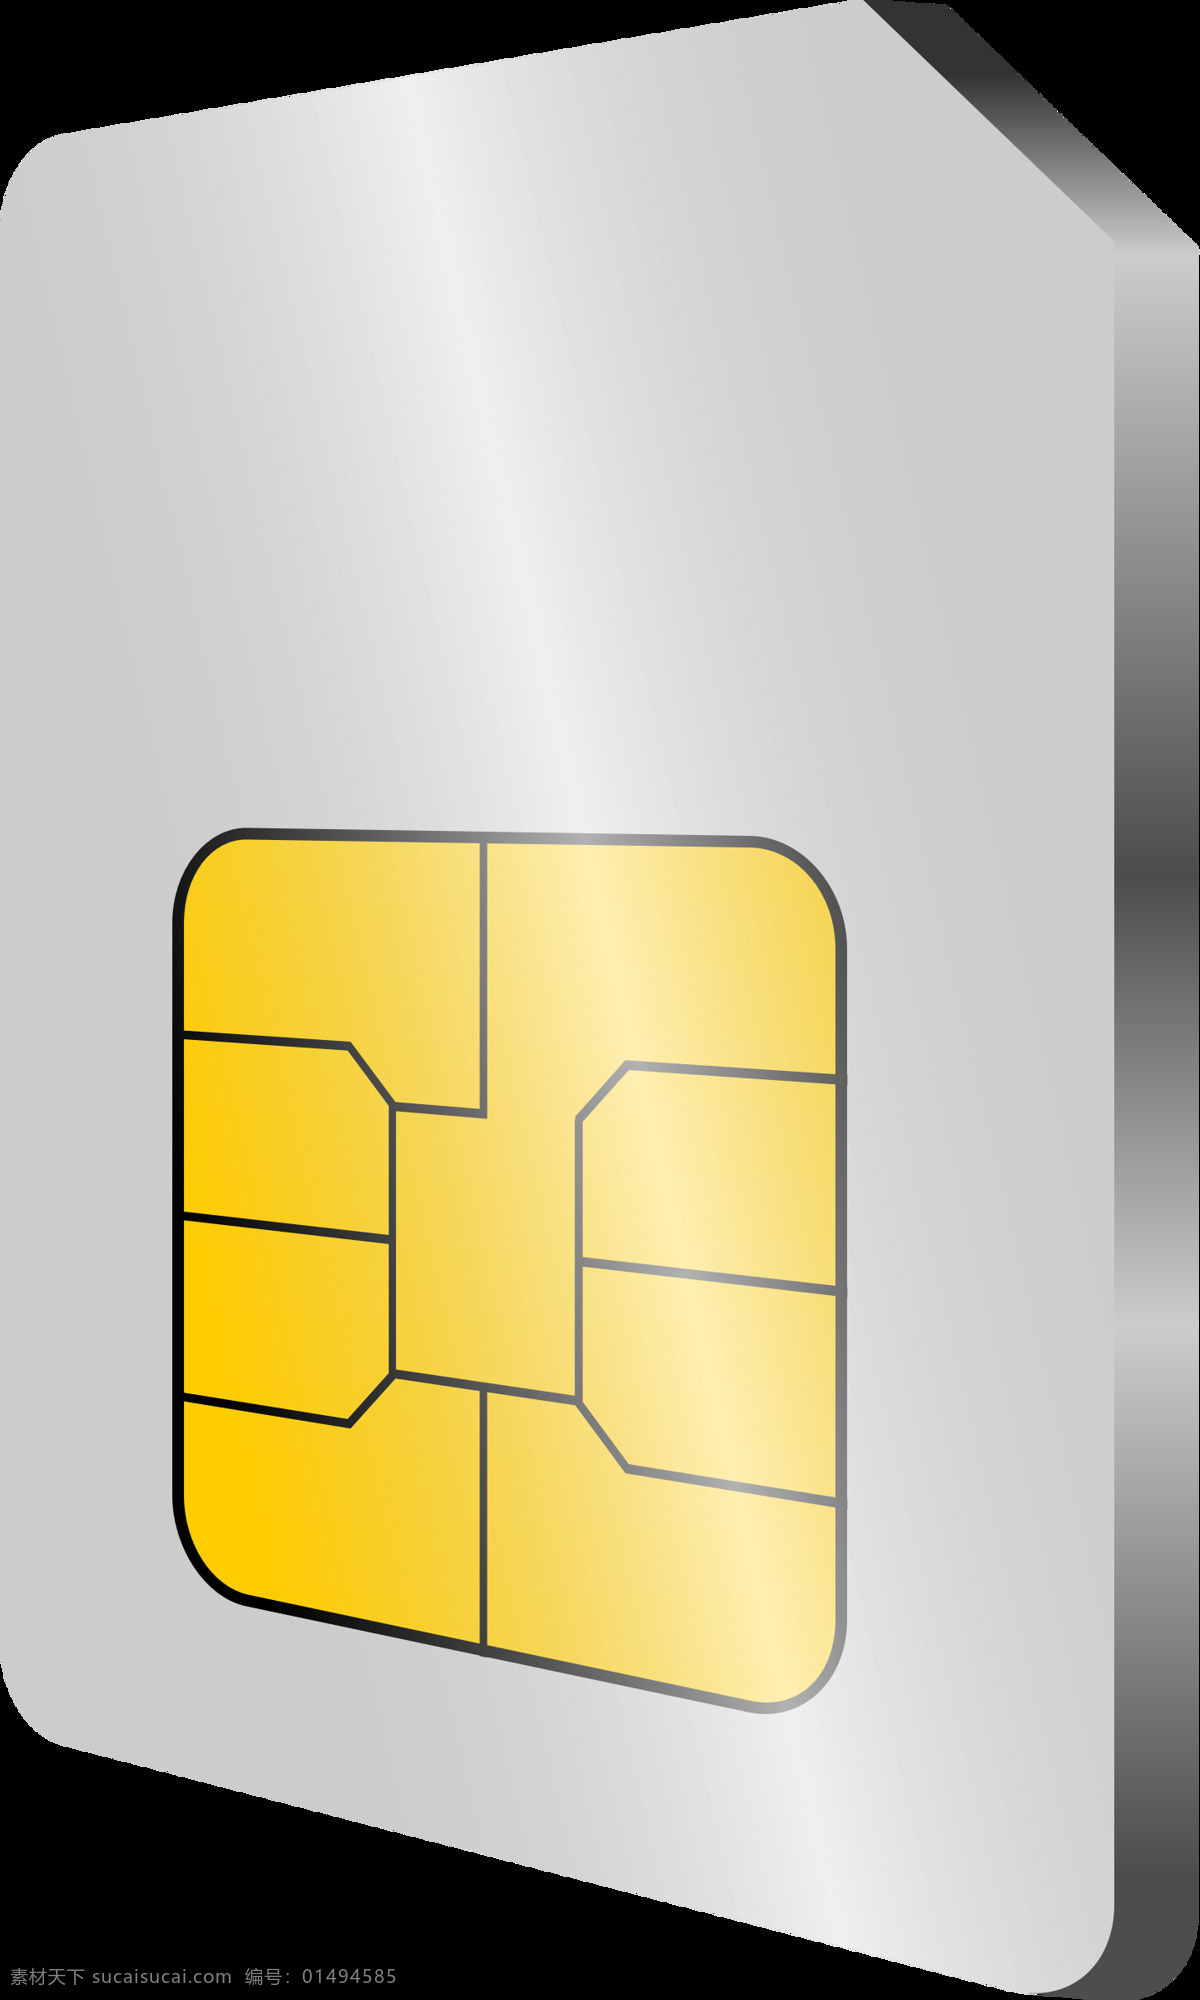 手机卡 图标 免 抠 透明 图 层 手机卡图标 移动手机卡 联通手机卡 4g手机卡 手机卡海报 手机卡板 sim卡 手机卡图片 手机sim卡 手机卡ic卡 海报